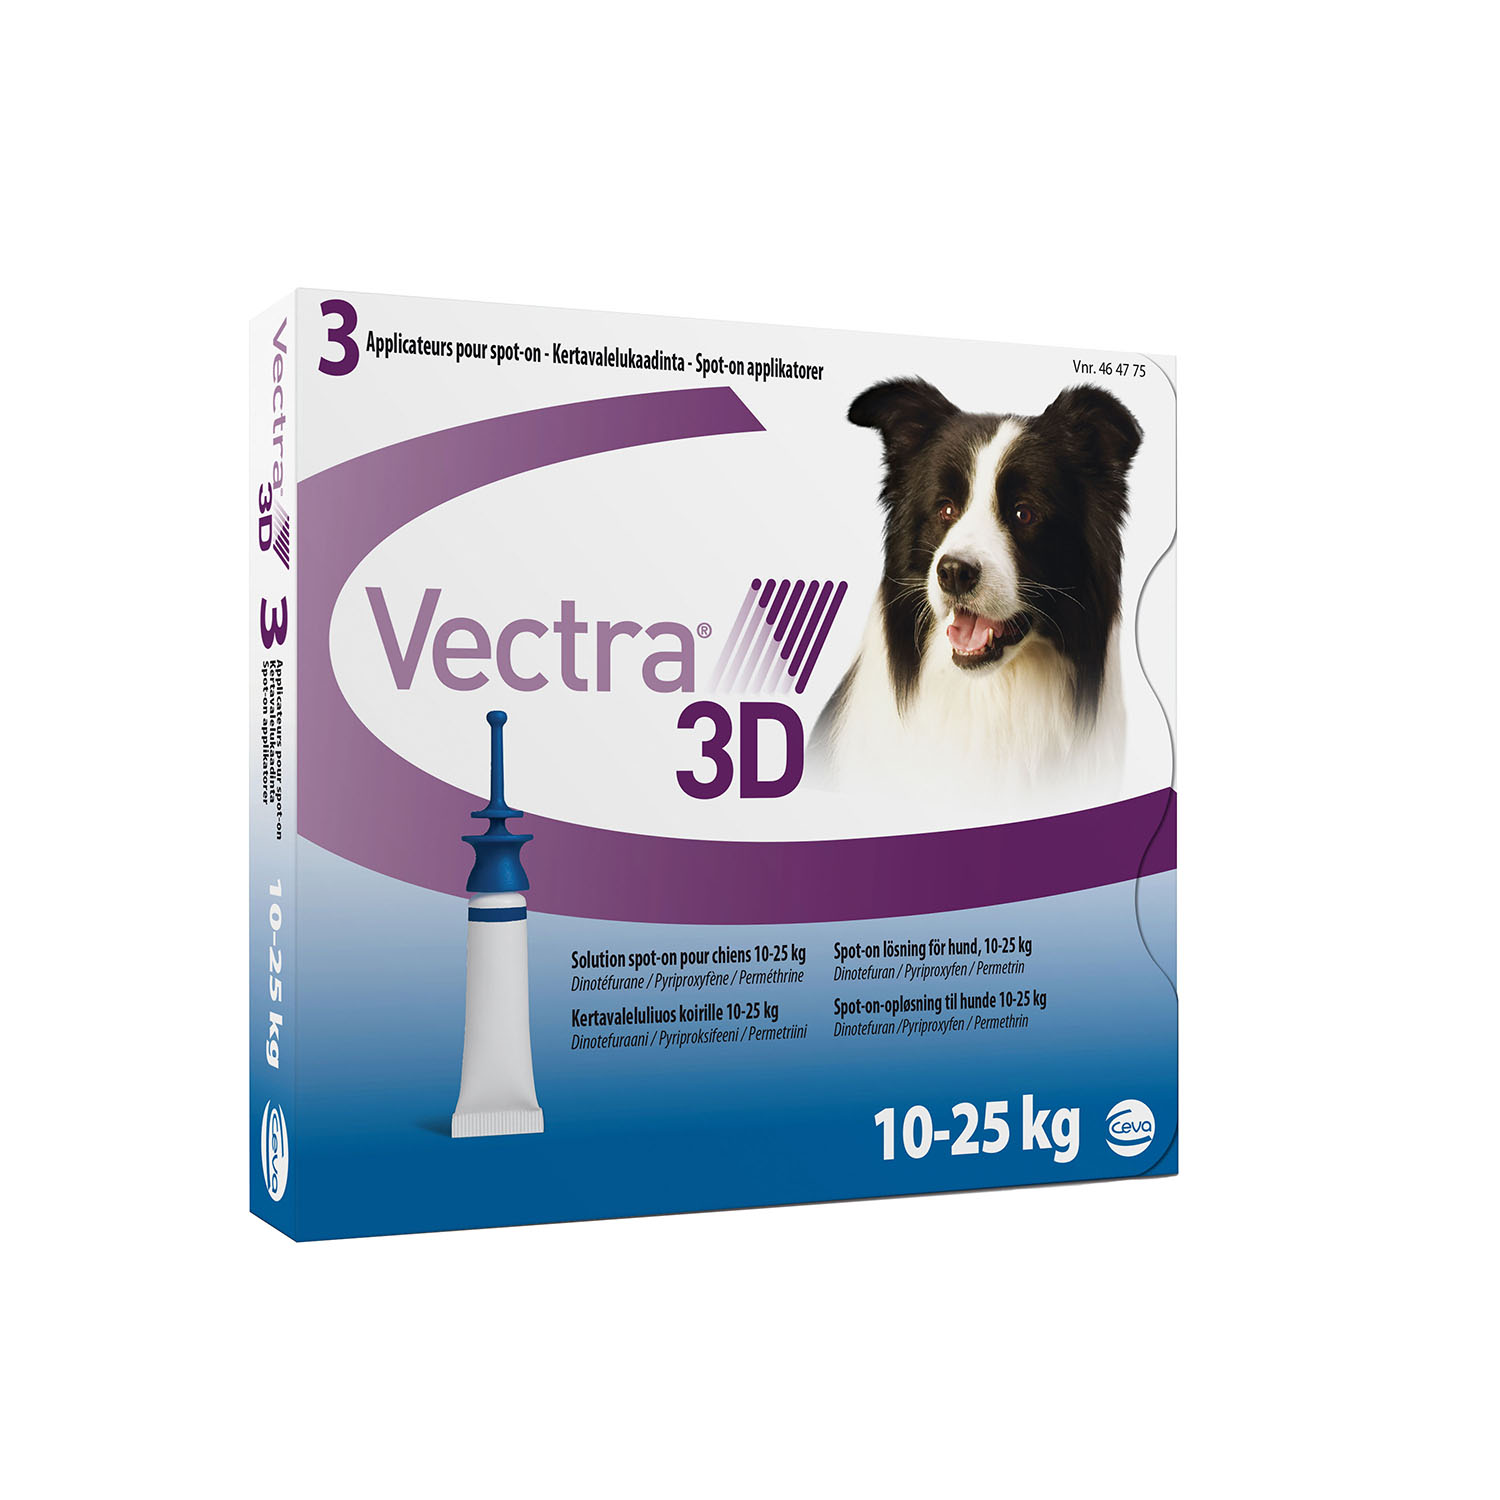 Vectra 3D капли от блох и клещей для собак весом от 10 кг до 25 кг